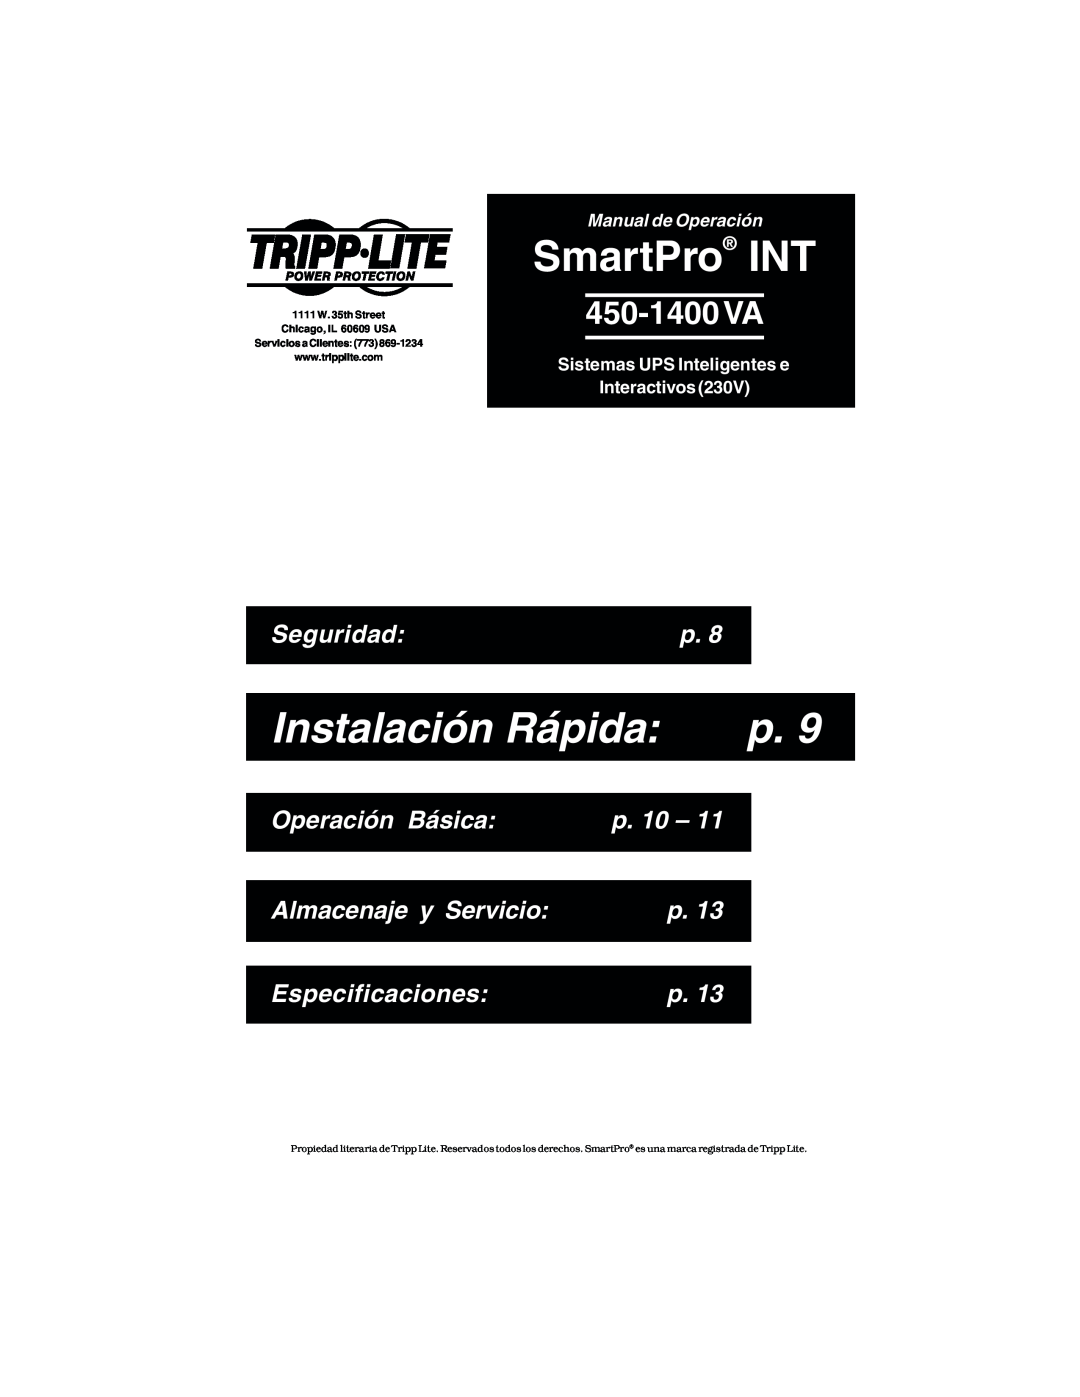 Tripp Lite 450-1400VA SmartPro INT, Instalación Rápida, 450-1400 VA, Seguridad, Operación Básica, p. 10, Especificaciones 